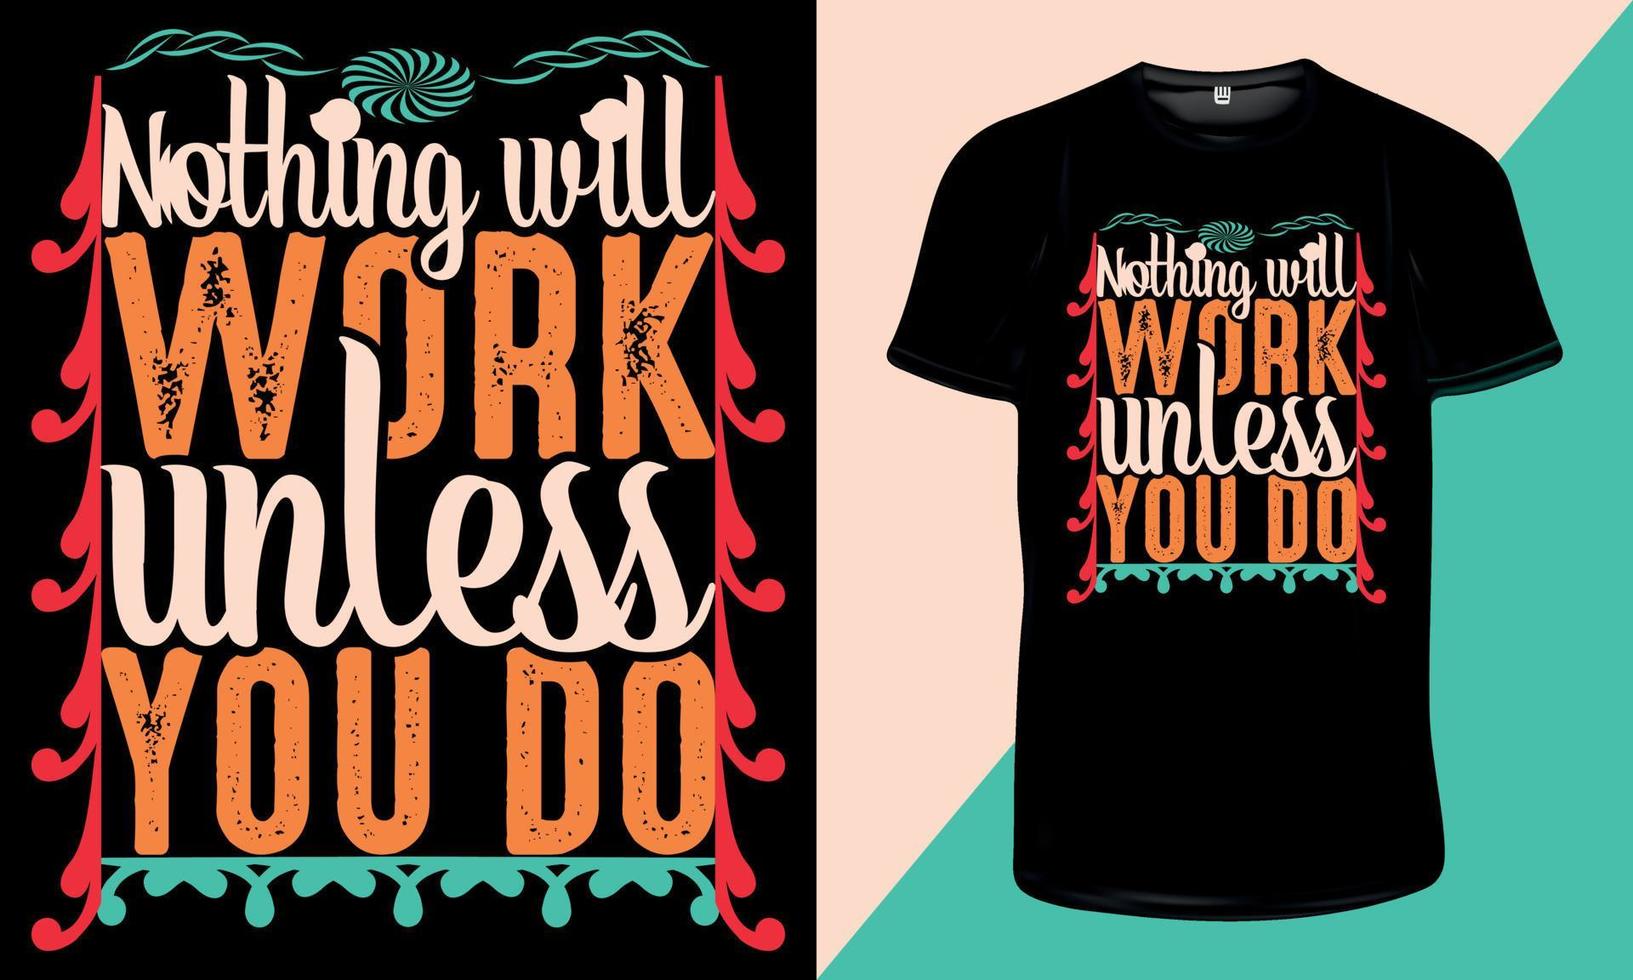 niets zal werken tenzij je dat doet - inspirerende citaten en motiverende typografie t-shirtontwerp om af te drukken vector